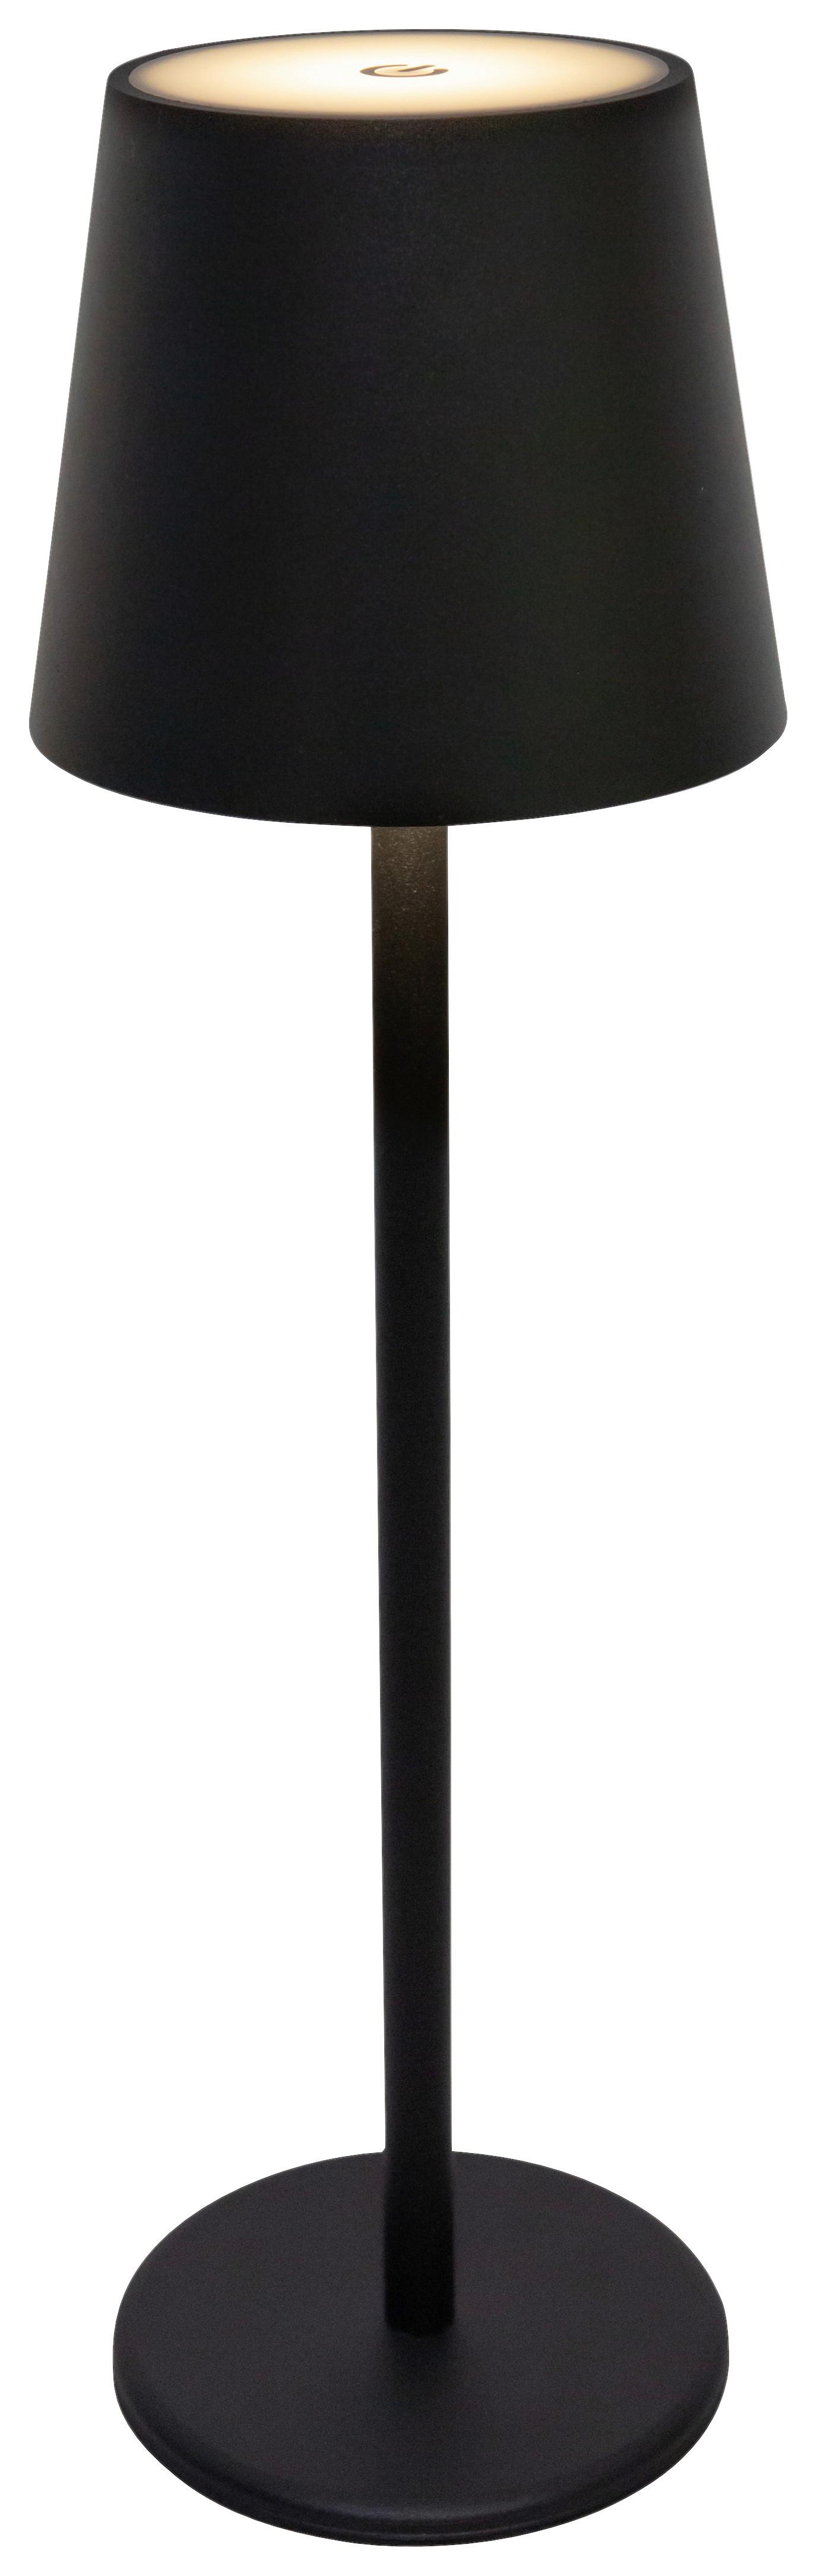 Asztali Lámpa Emily - fekete, Basics, műanyag/fém (11,5/36cm) - Luca Bessoni